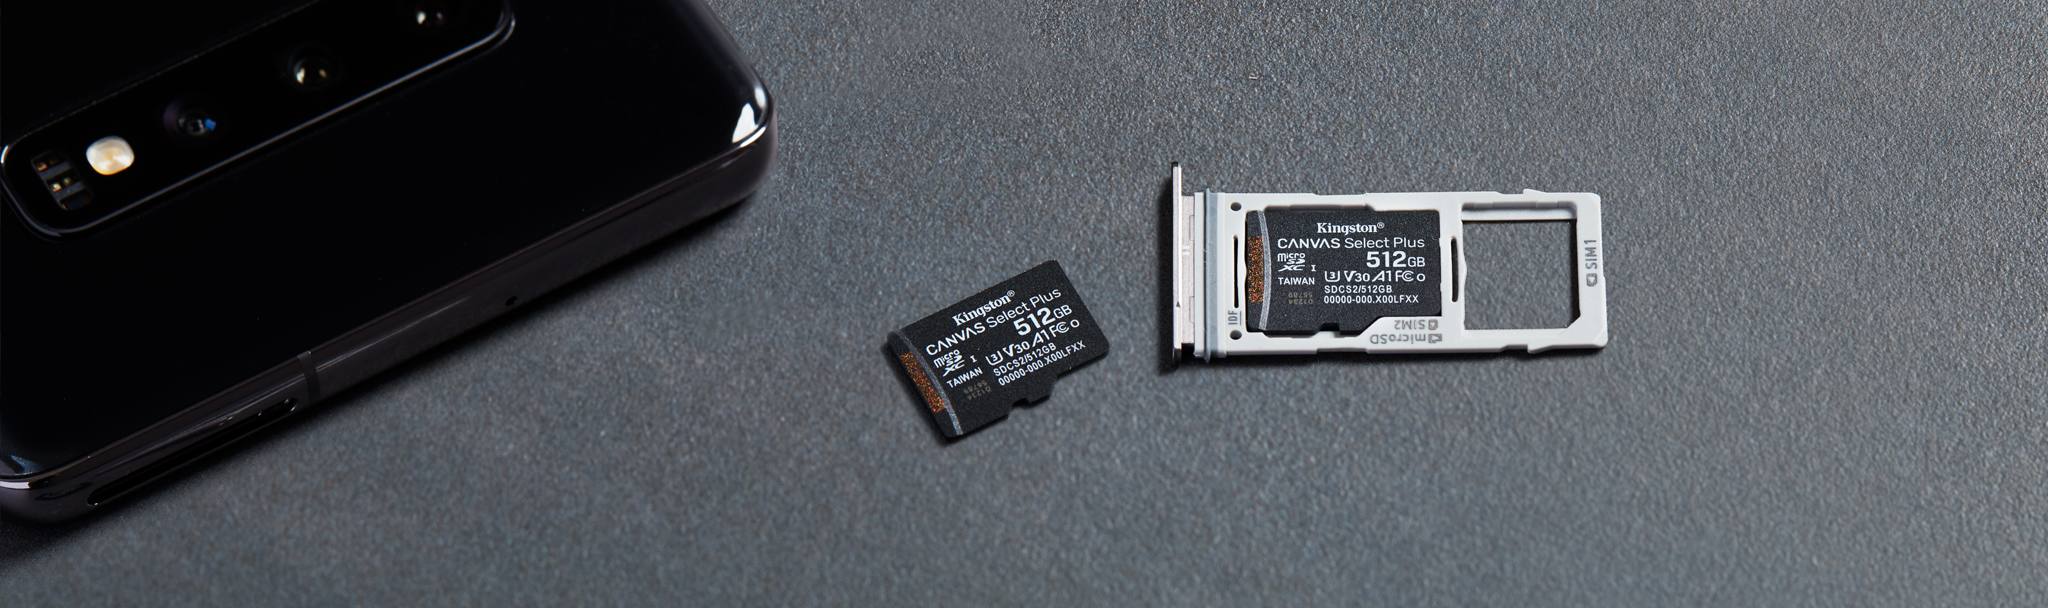 Kingston Carte Mémoire SD card SDS/16GB  Canvas Select UHS-I Classe 10 avec vitesse de lecture allant jusqu’à 80Mo/s